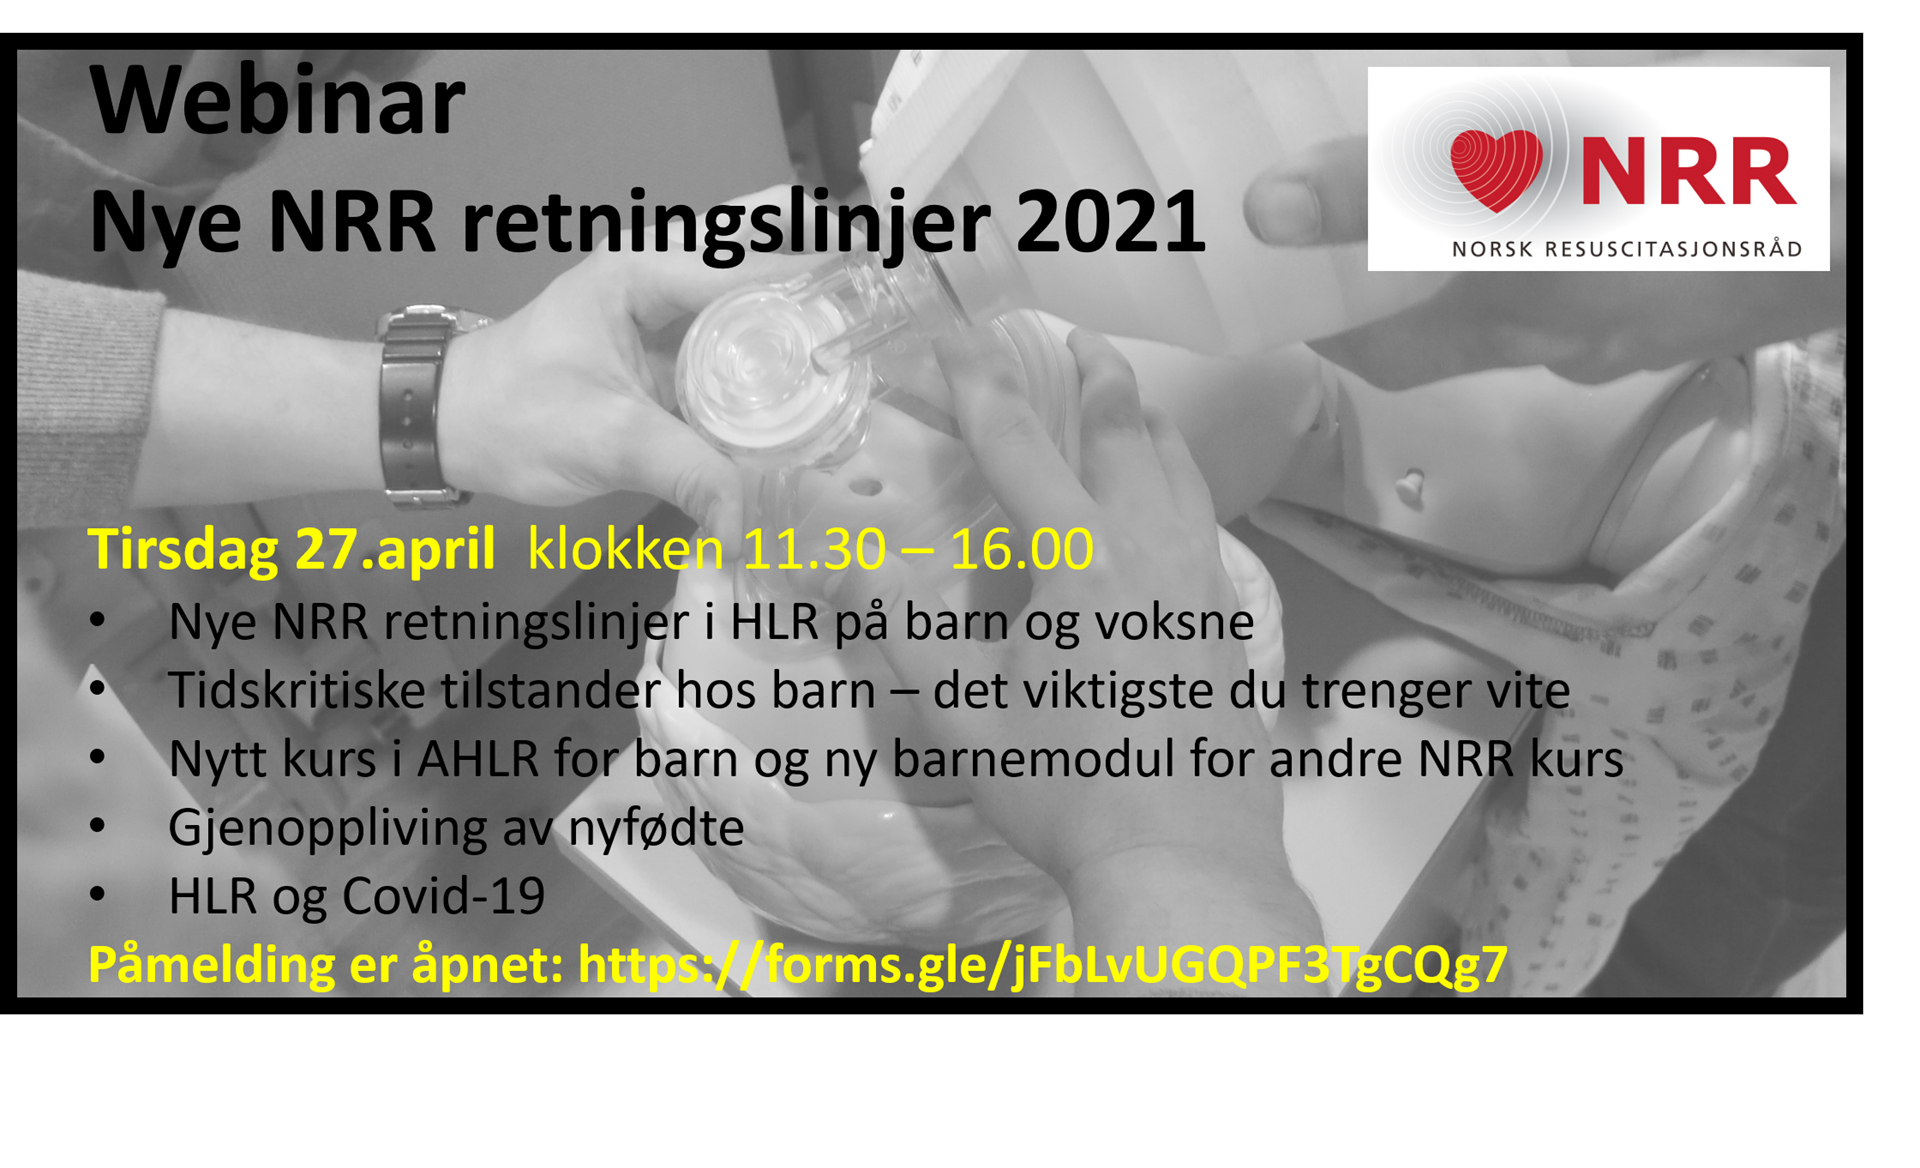 Plakat for webinaret "Nye NRR retningslinjer 2021.